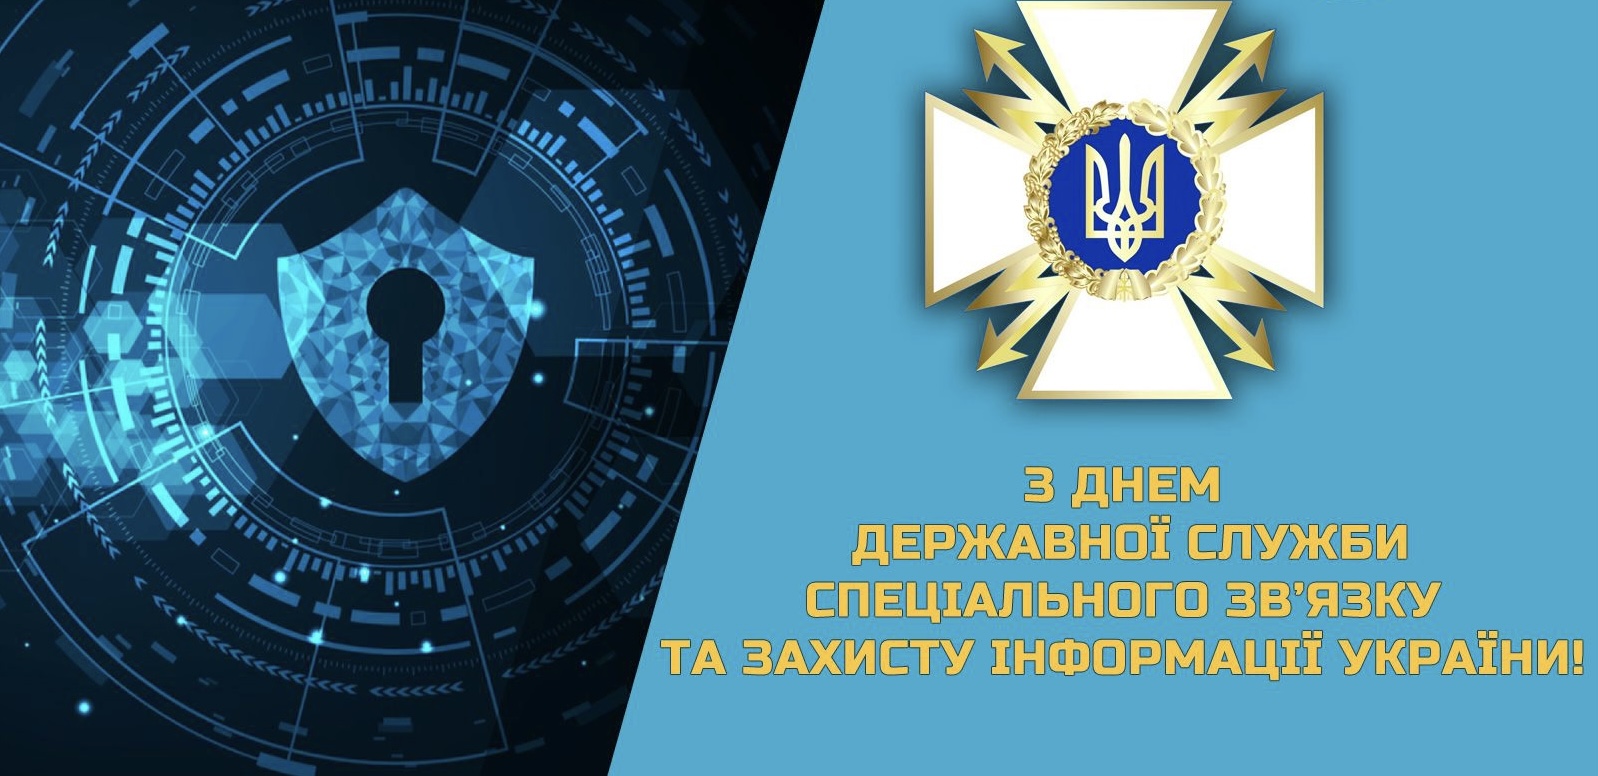 День Державної служби спеціального зв’язку та захисту  інформації України